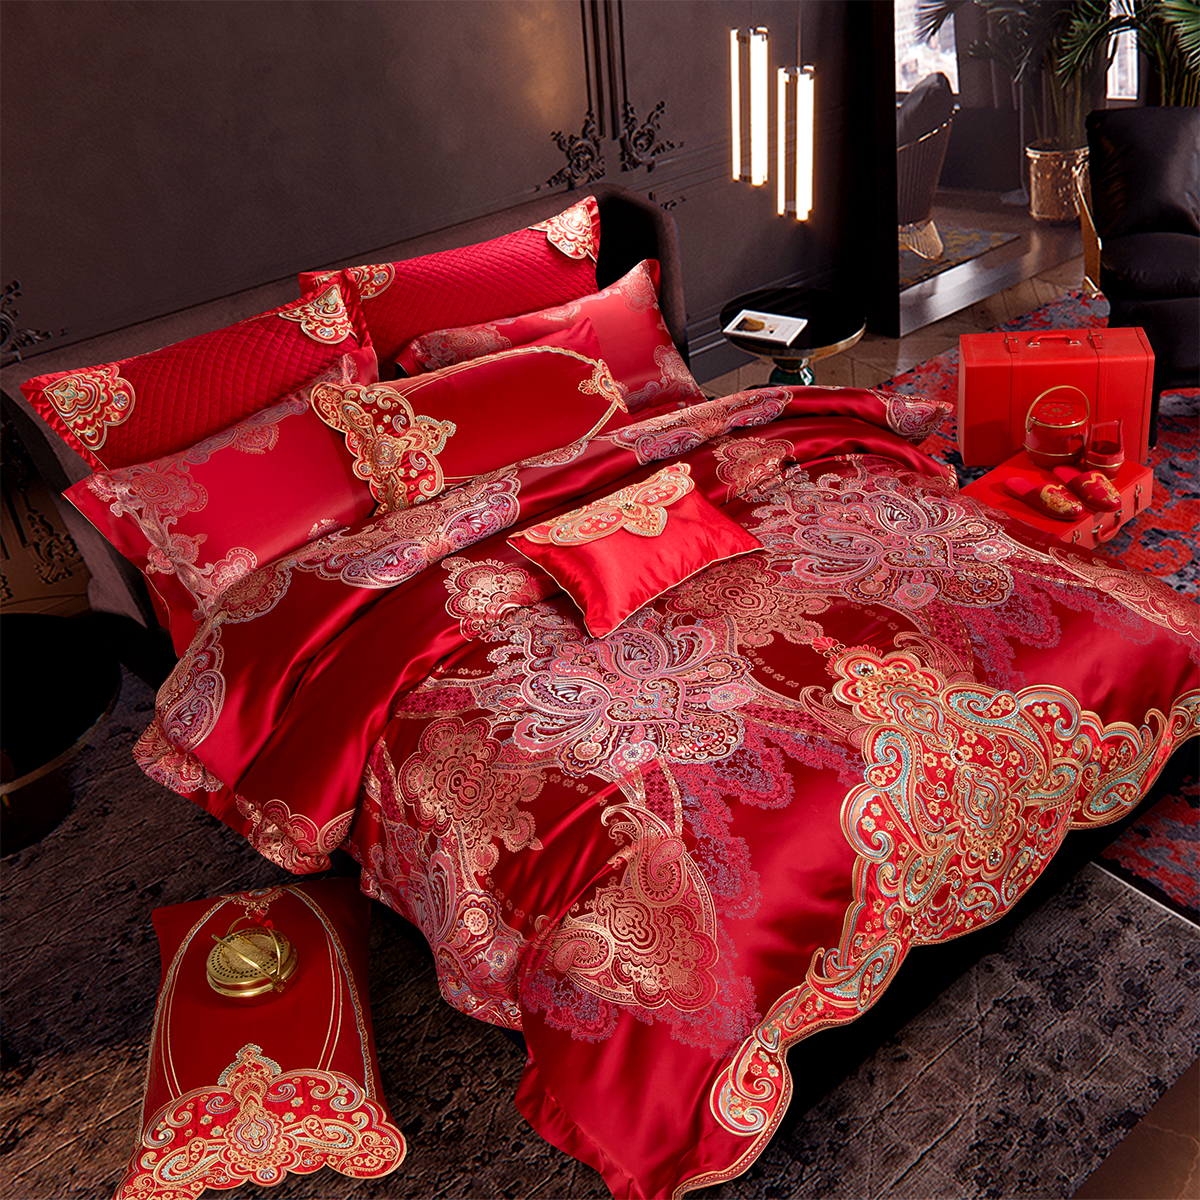 思辰家纺结婚四件套高端大红色真丝棉欧式刺绣婚庆十件套床上用品